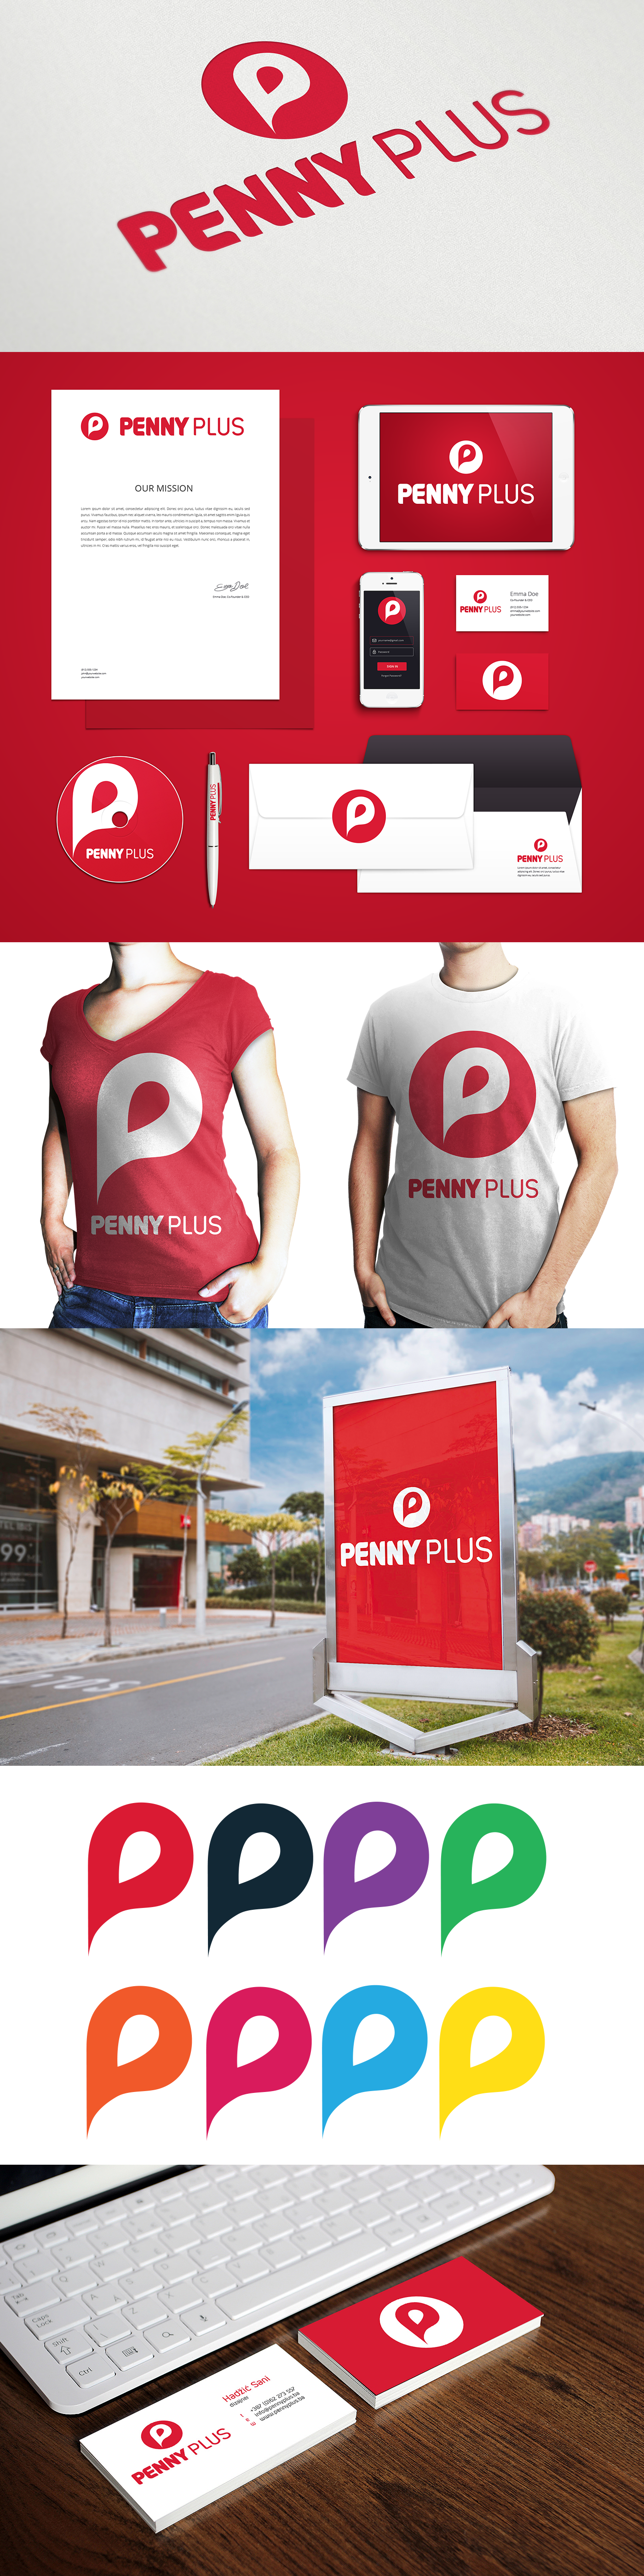 pennyplus